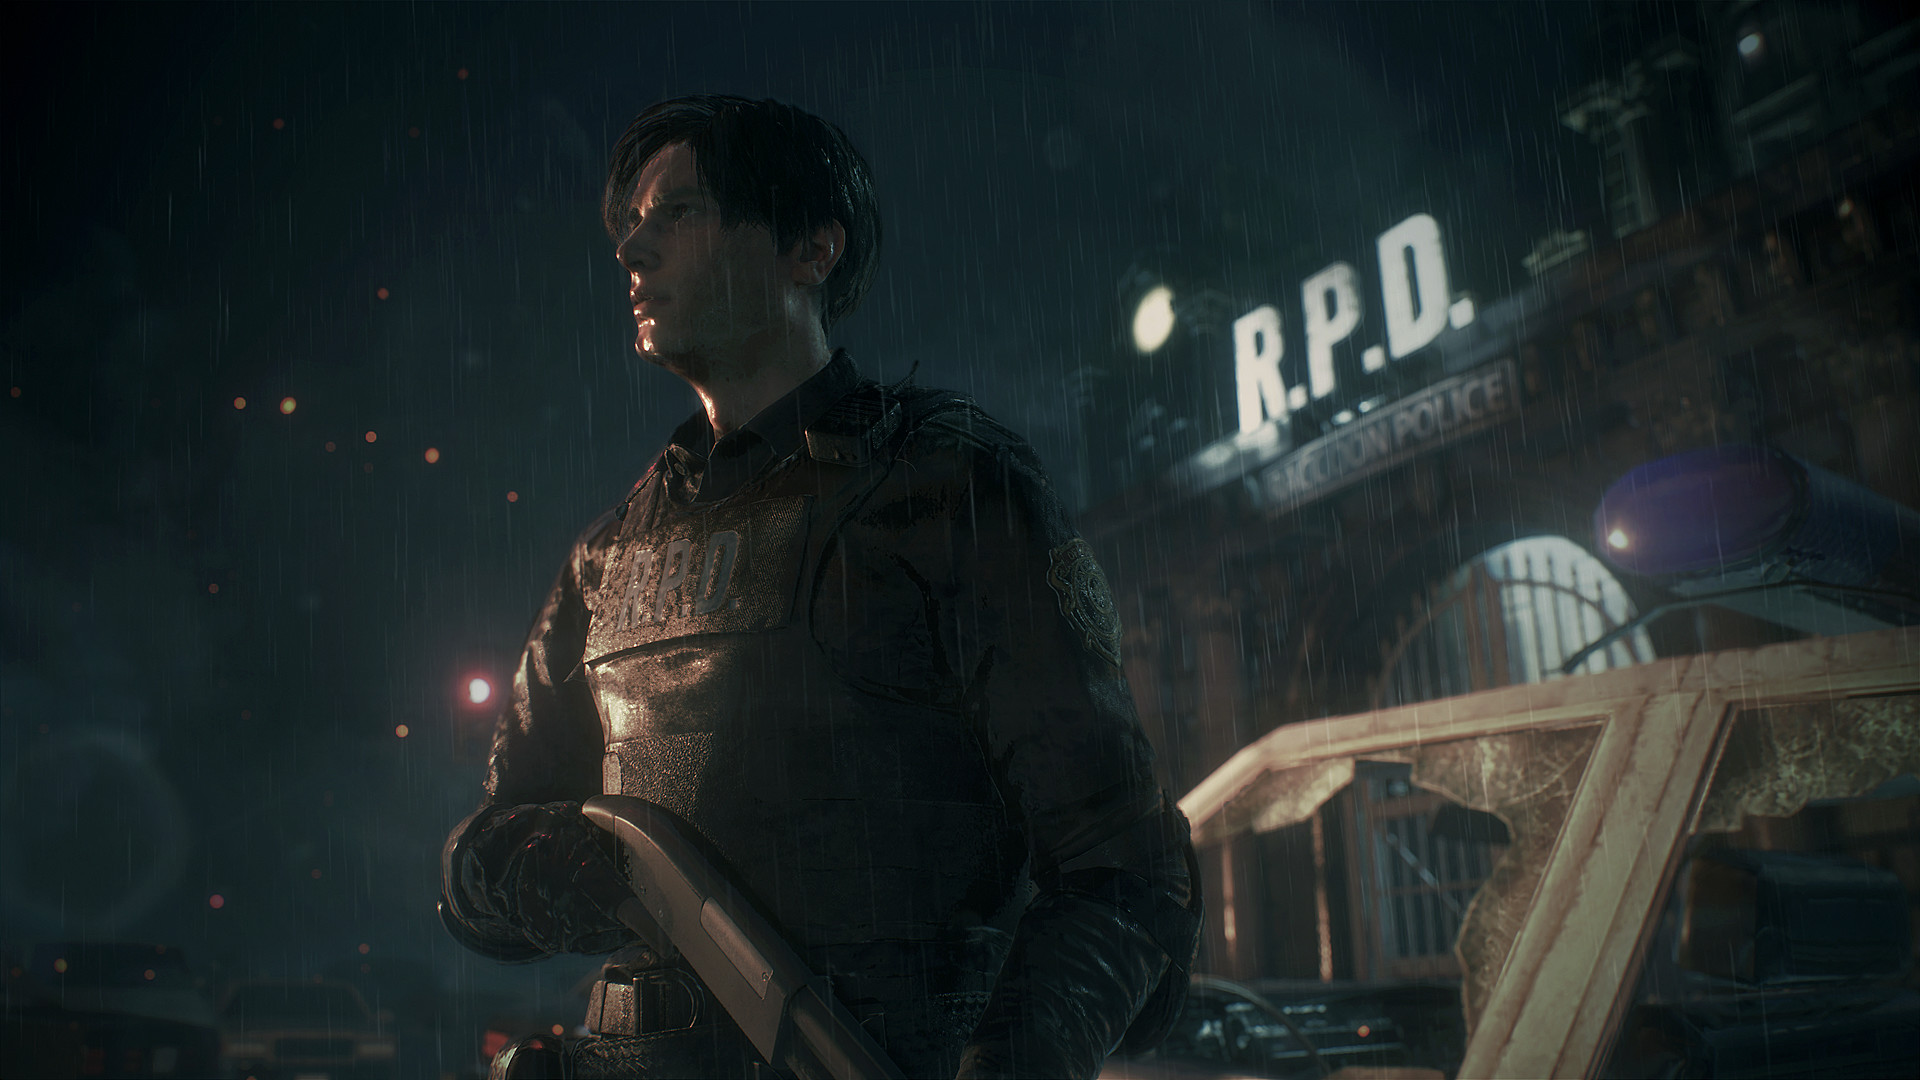 Save 75% on Resident Evil Revelations 2 on Steam